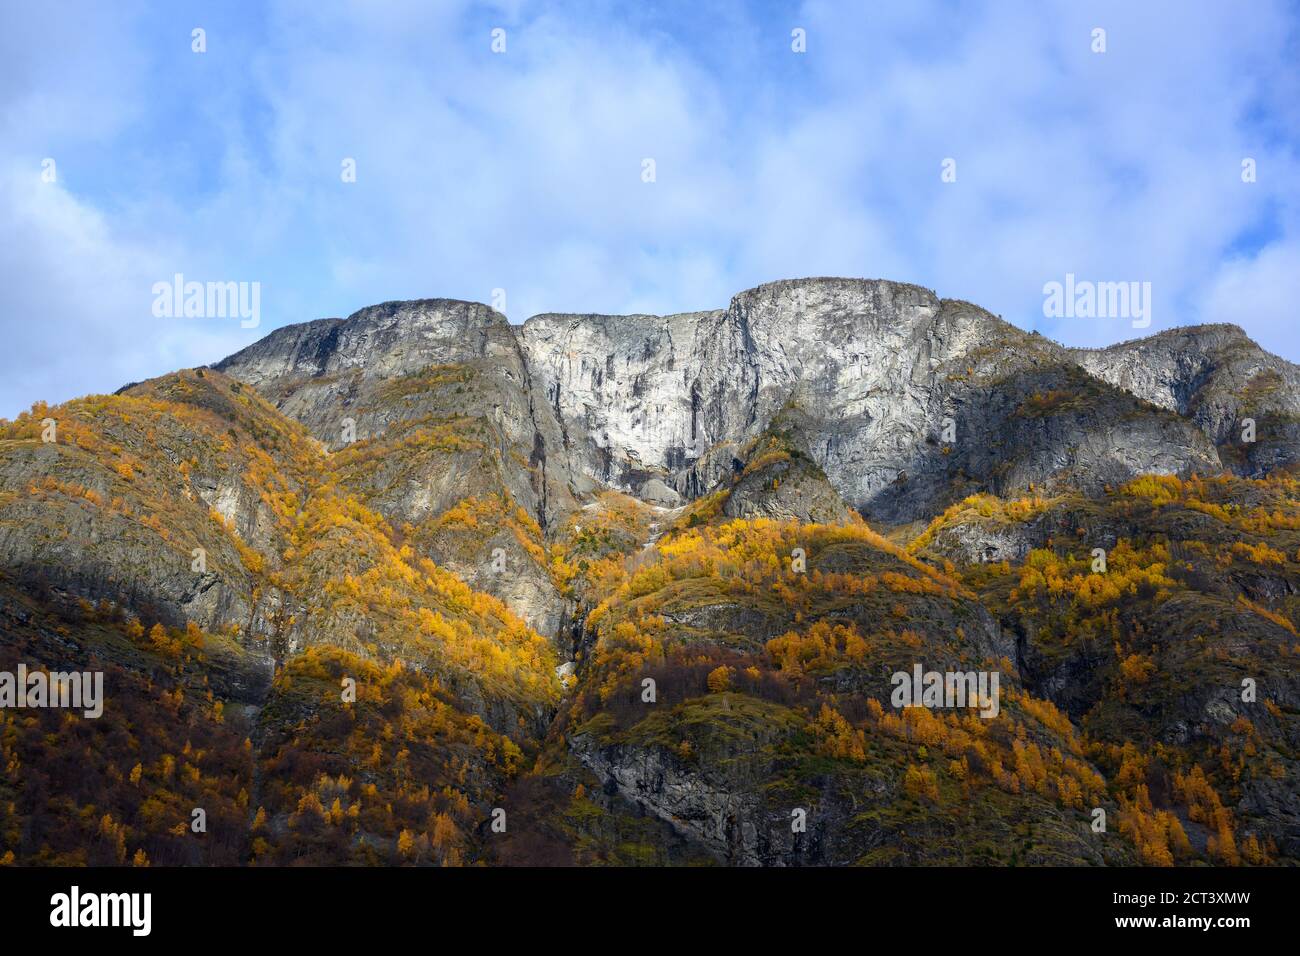 Le grandi montagne rocciose sulla cima della montagna sono neve bianco e cielo blu con le nuvole e le foglie che diventa giallo nella stagione autunnale. Foto Stock